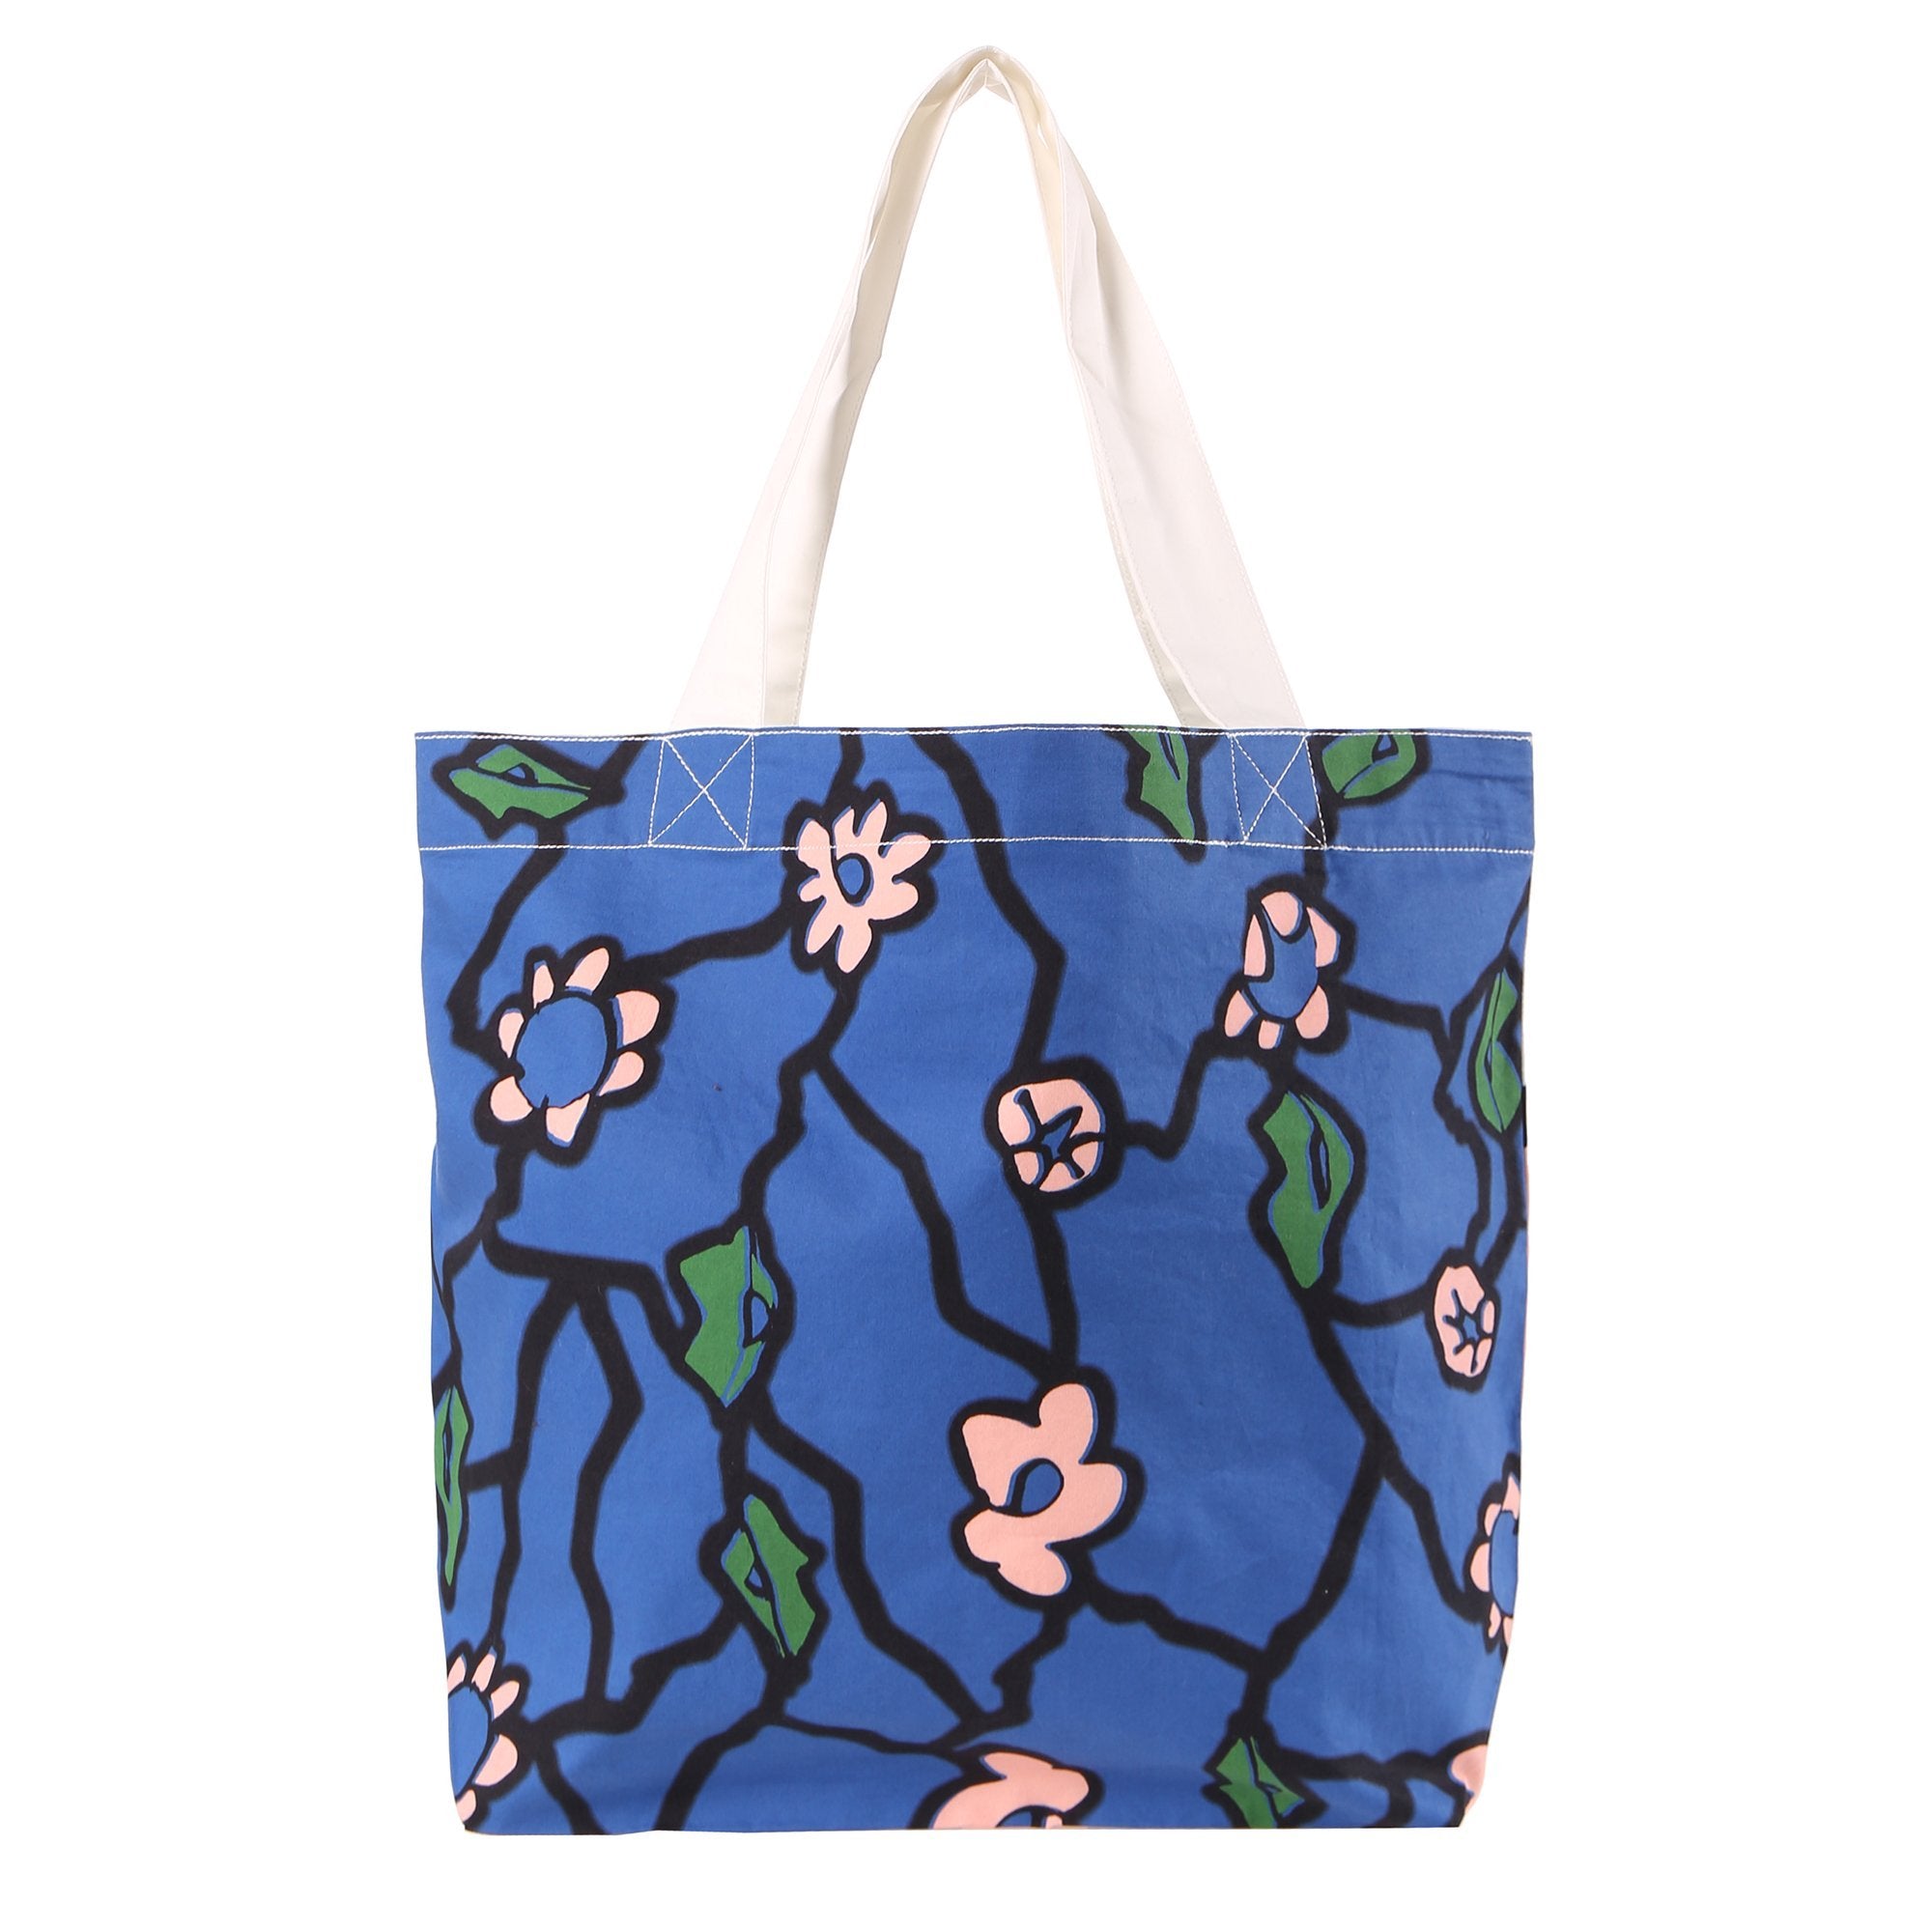 Girls White & Blue Flower Cotton Bag